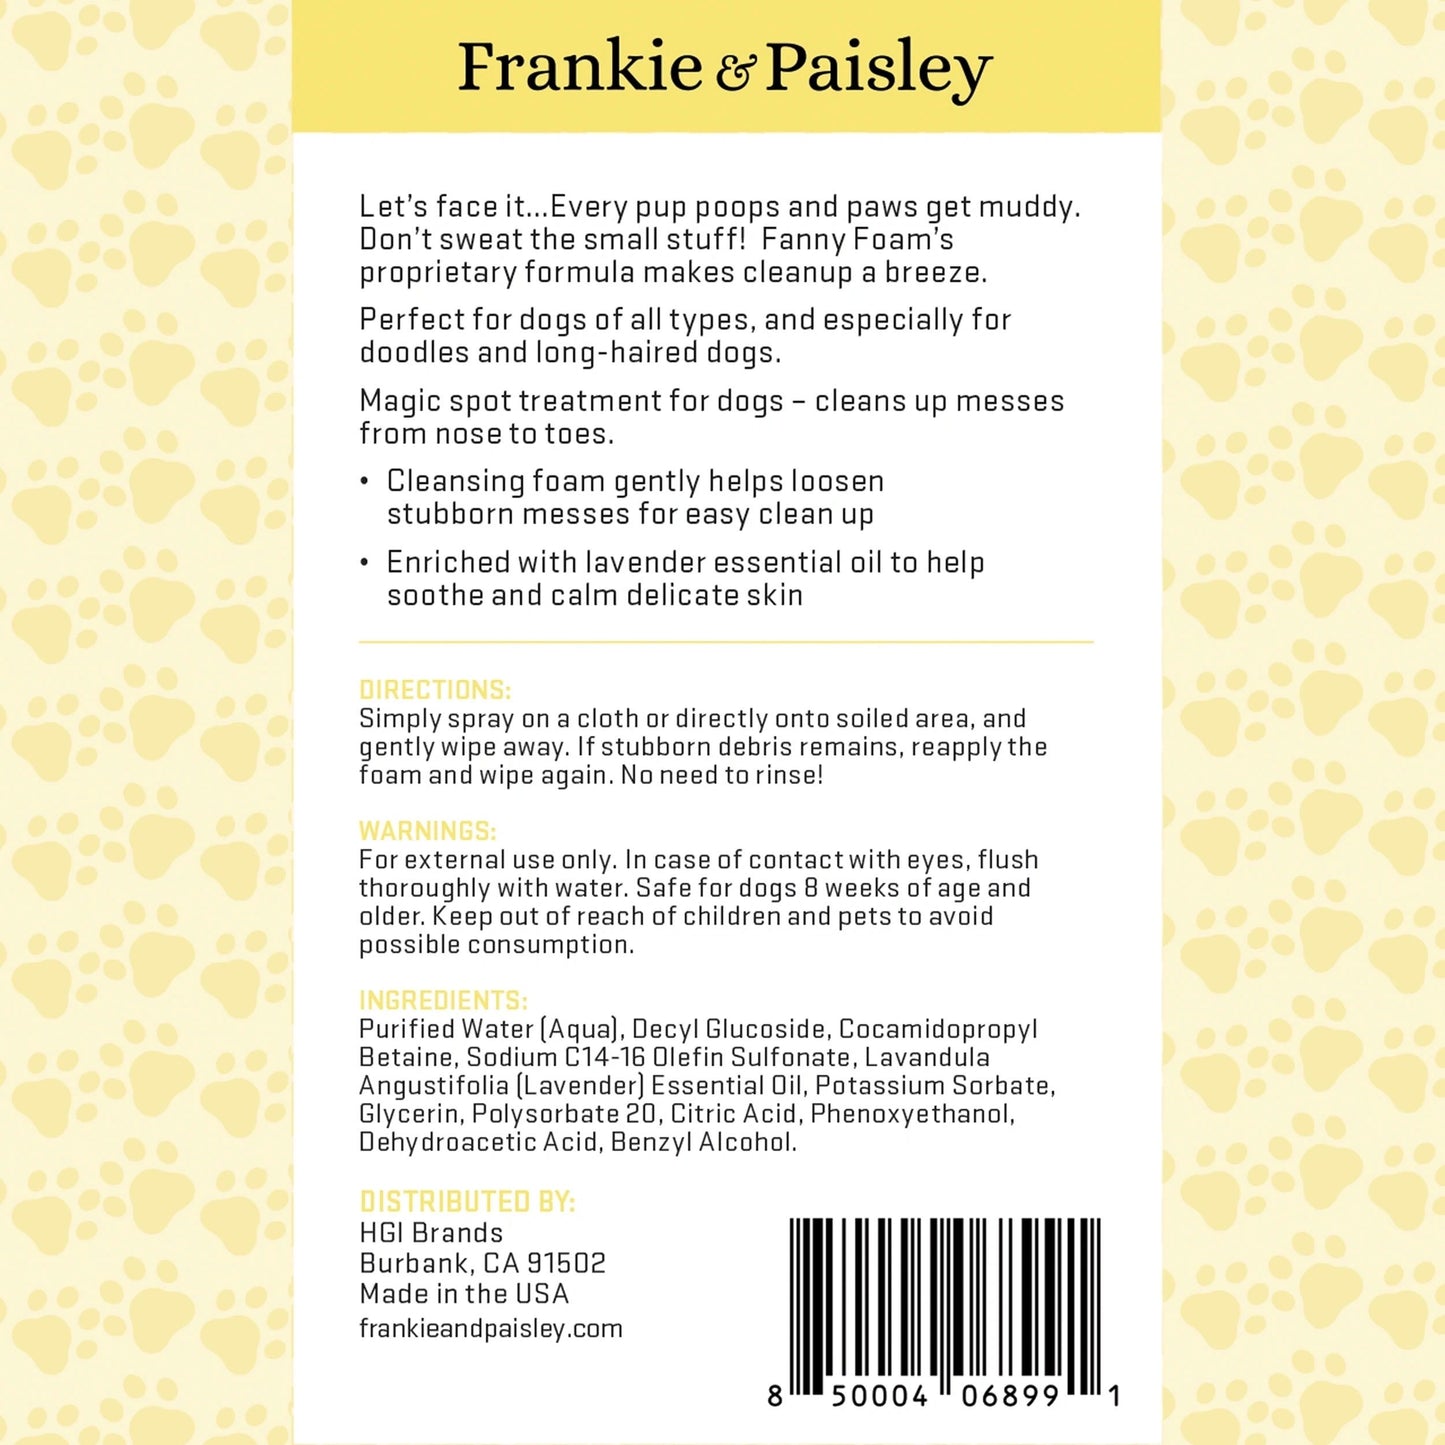 Fanny Foam by Frankie & Paisley